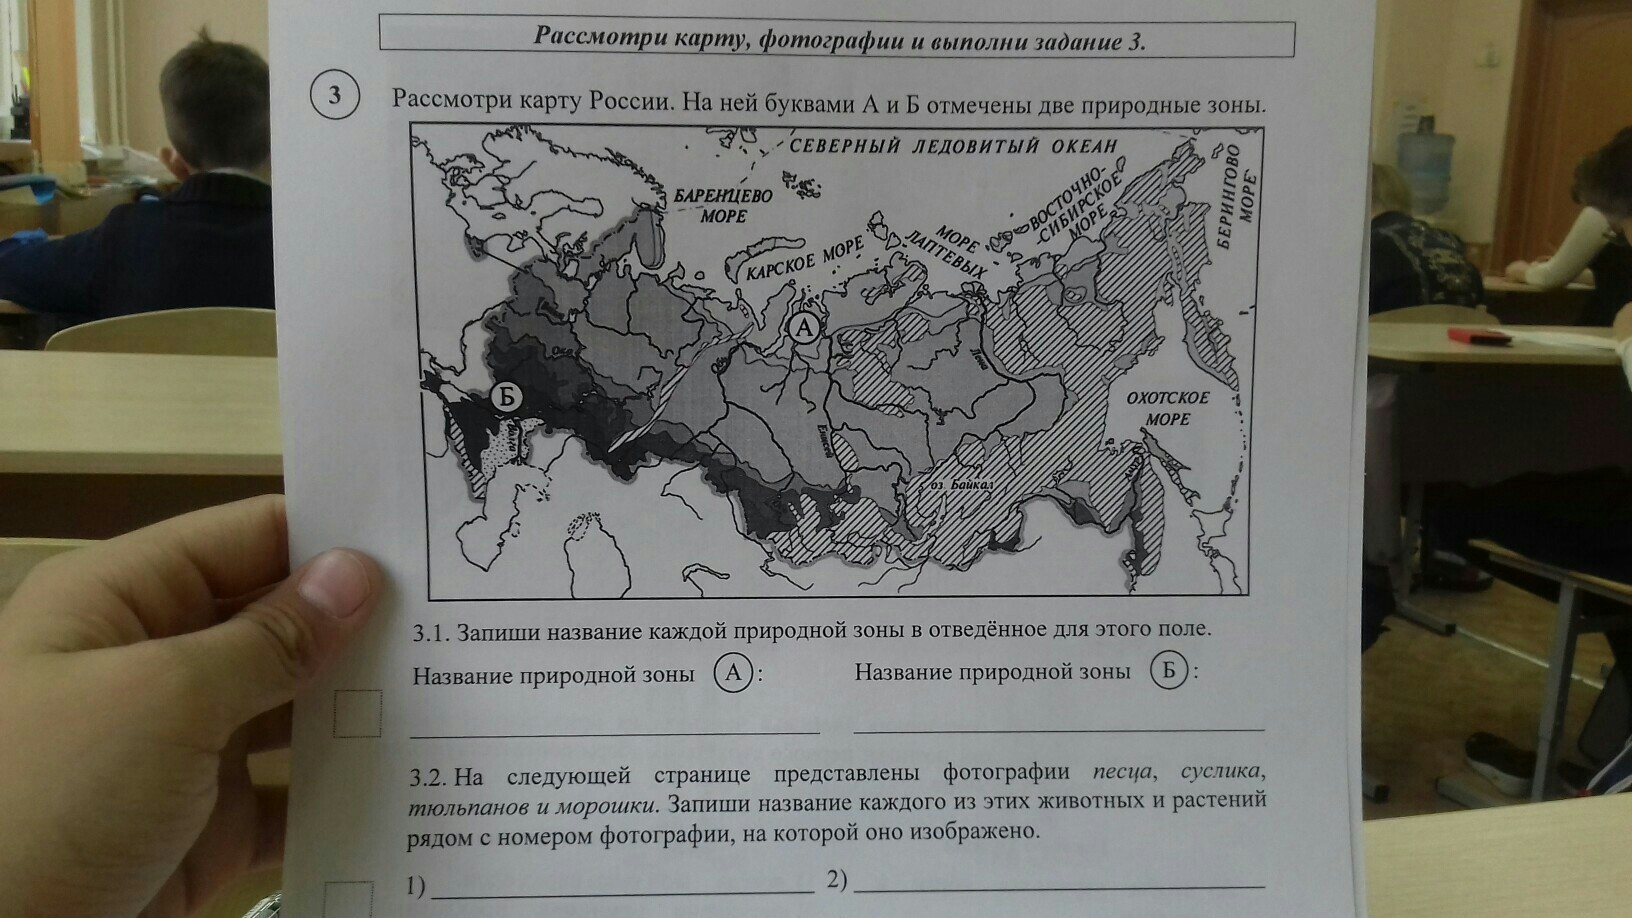 В течение реки много водоворотов впр ответы. Карта природных зон России ВПР. Природные зоны по ВПР. Карта природные зоны России 4 класс окружающий мир для ВПР. ВПР окружающий мир зоны.